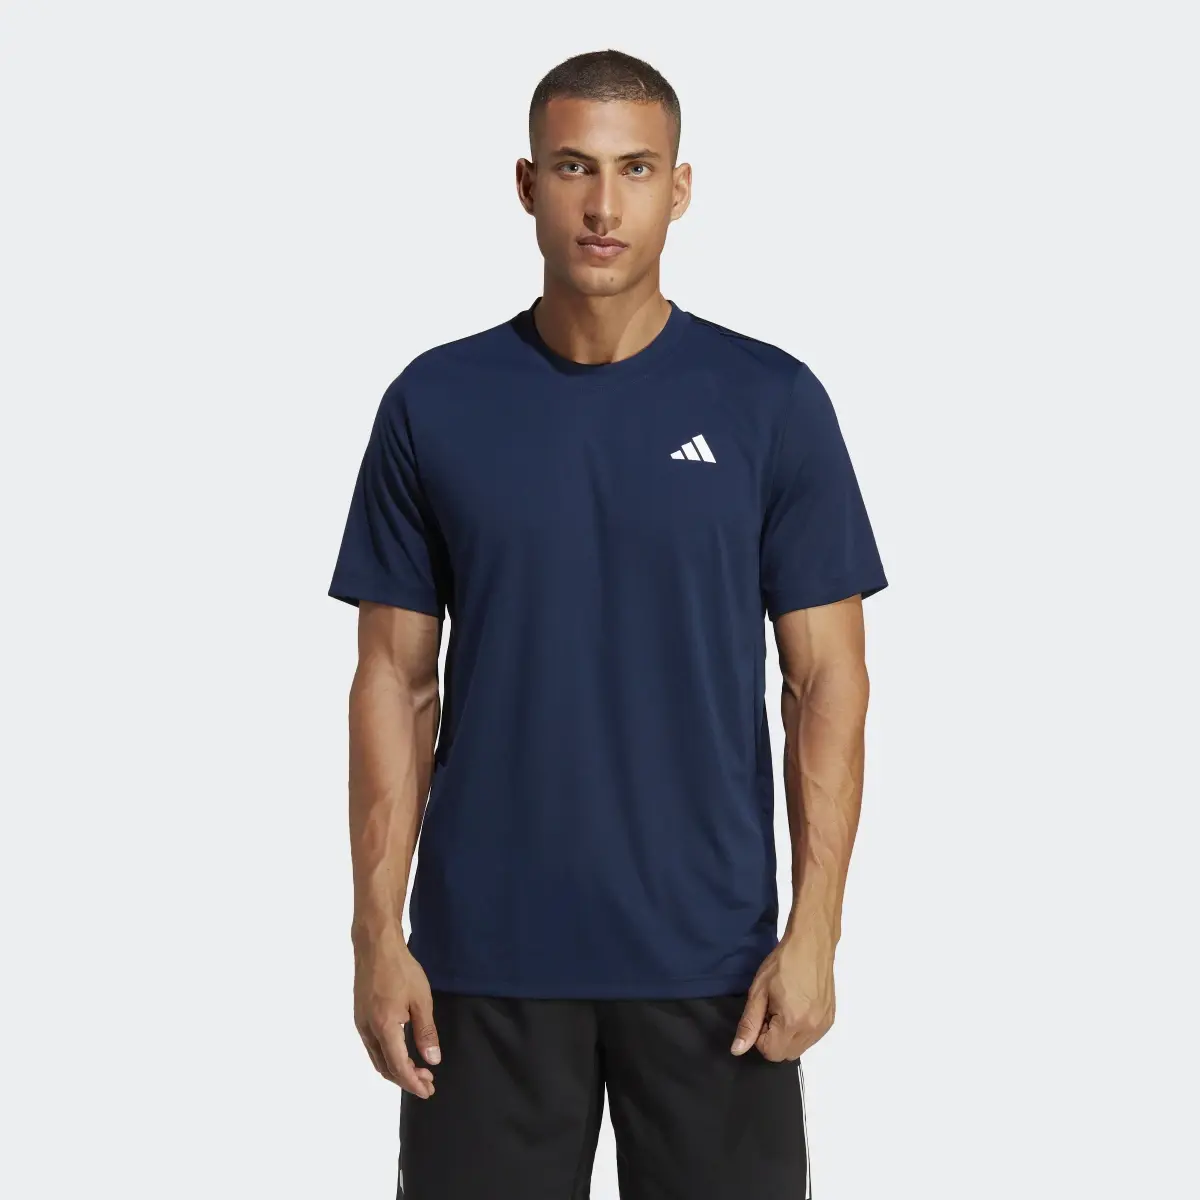 Adidas T-shirt Club Tennis. 2